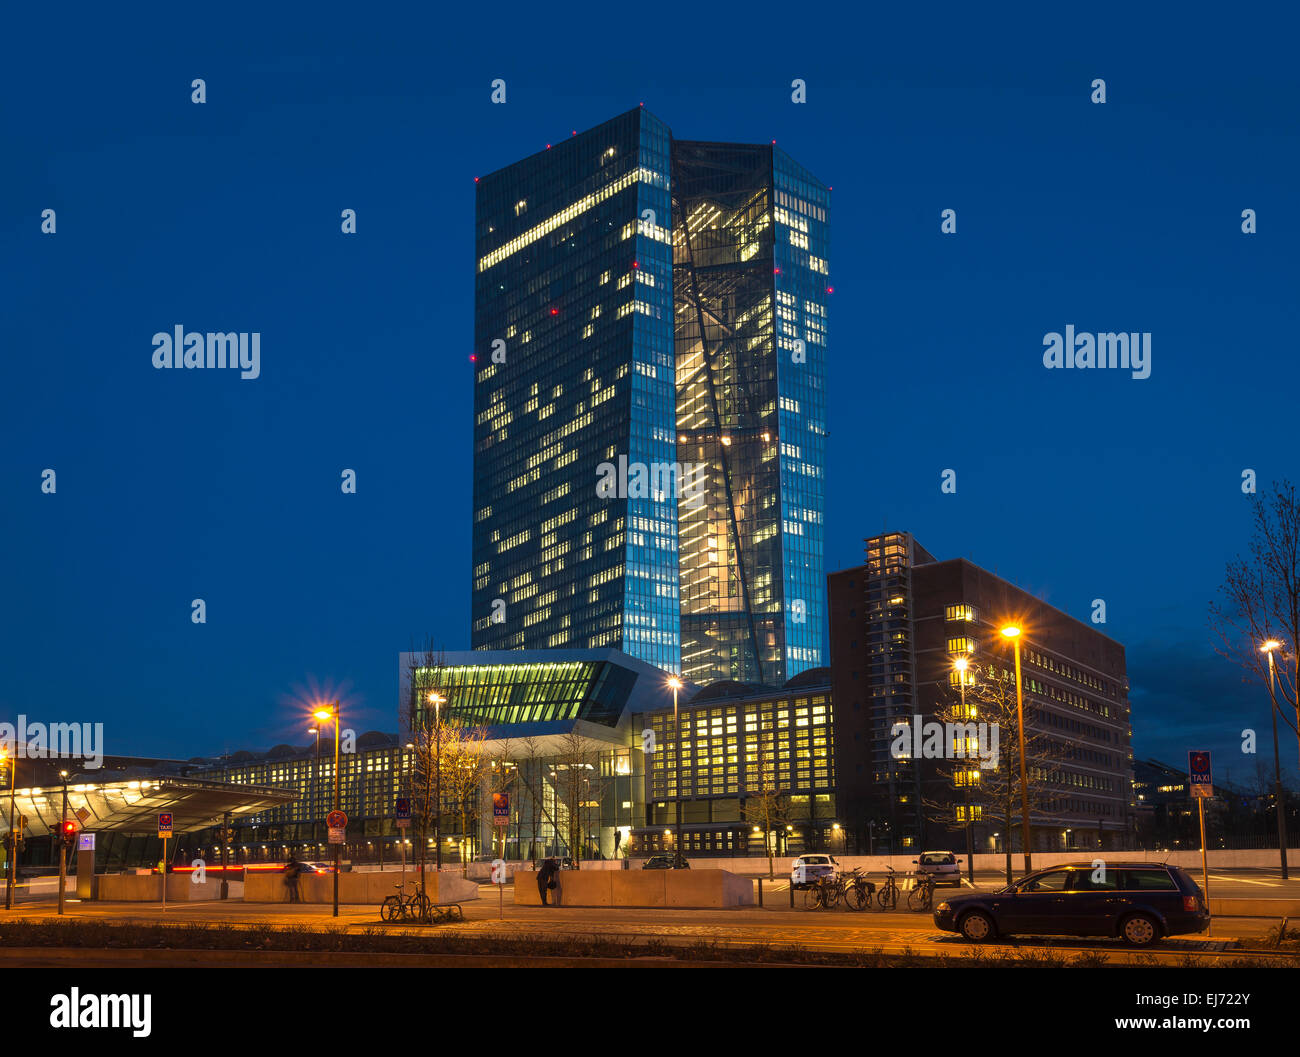 Der neue Europäische Zentralbank, EZB, Vorderseite des Gebäudes, beleuchtet in der Nacht, Frankfurt Am Main, Hessen, Deutschland Stockfoto